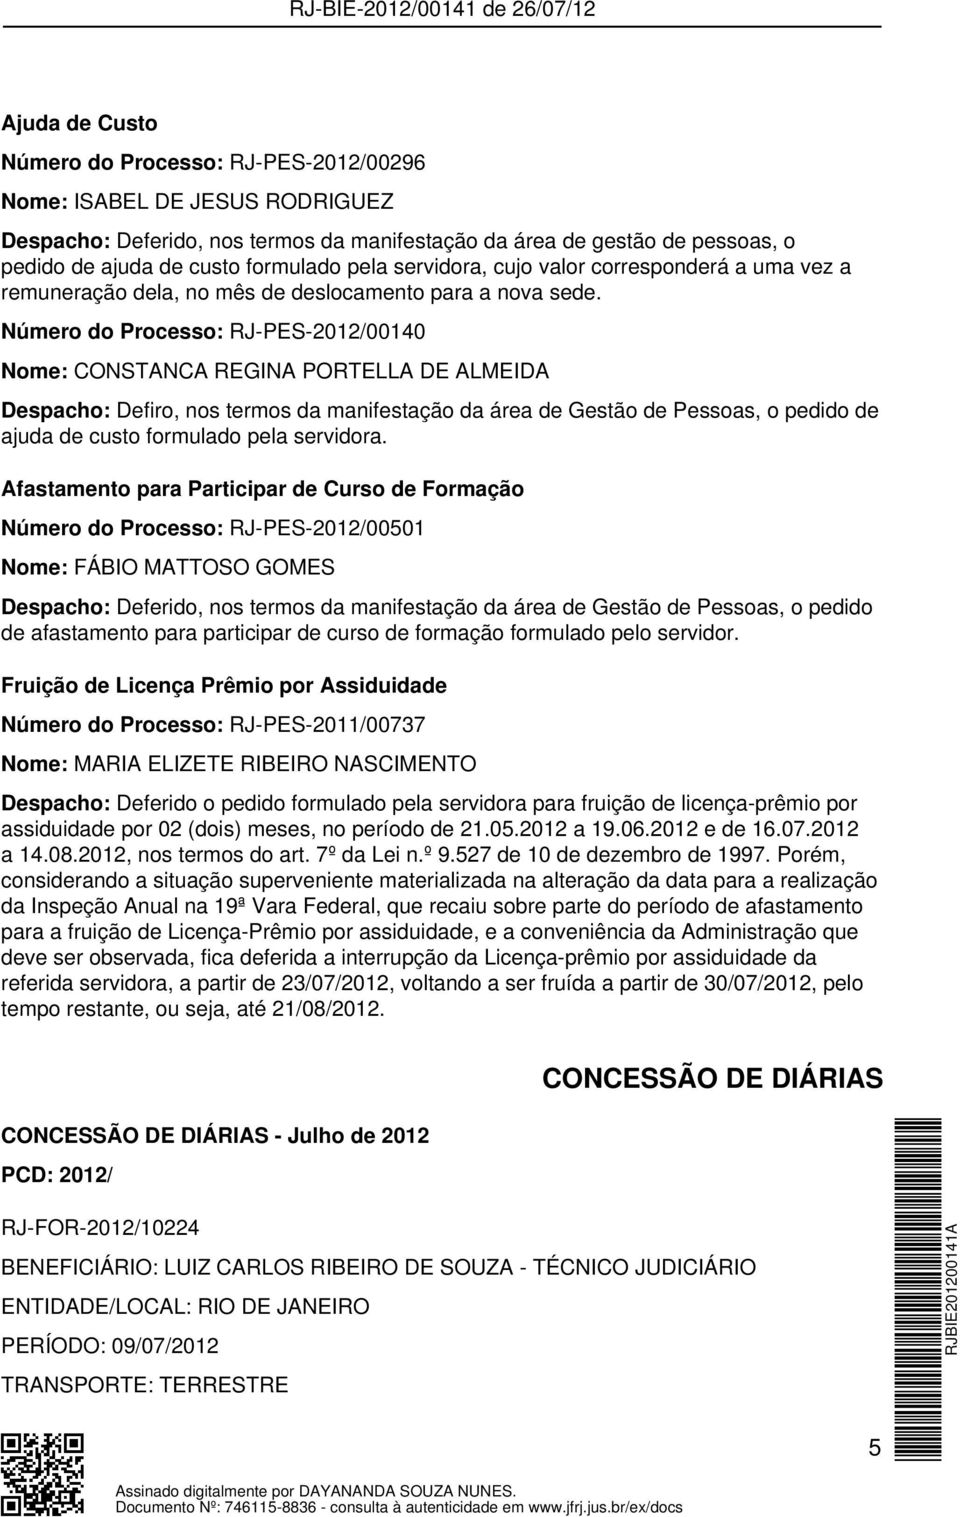 Número do Processo: RJ-PES-2012/00140 Nome: CONSTANCA REGINA PORTELLA DE ALMEIDA Despacho: Defiro, nos termos da manifestação da área de Gestão de Pessoas, o pedido de ajuda de custo formulado pela